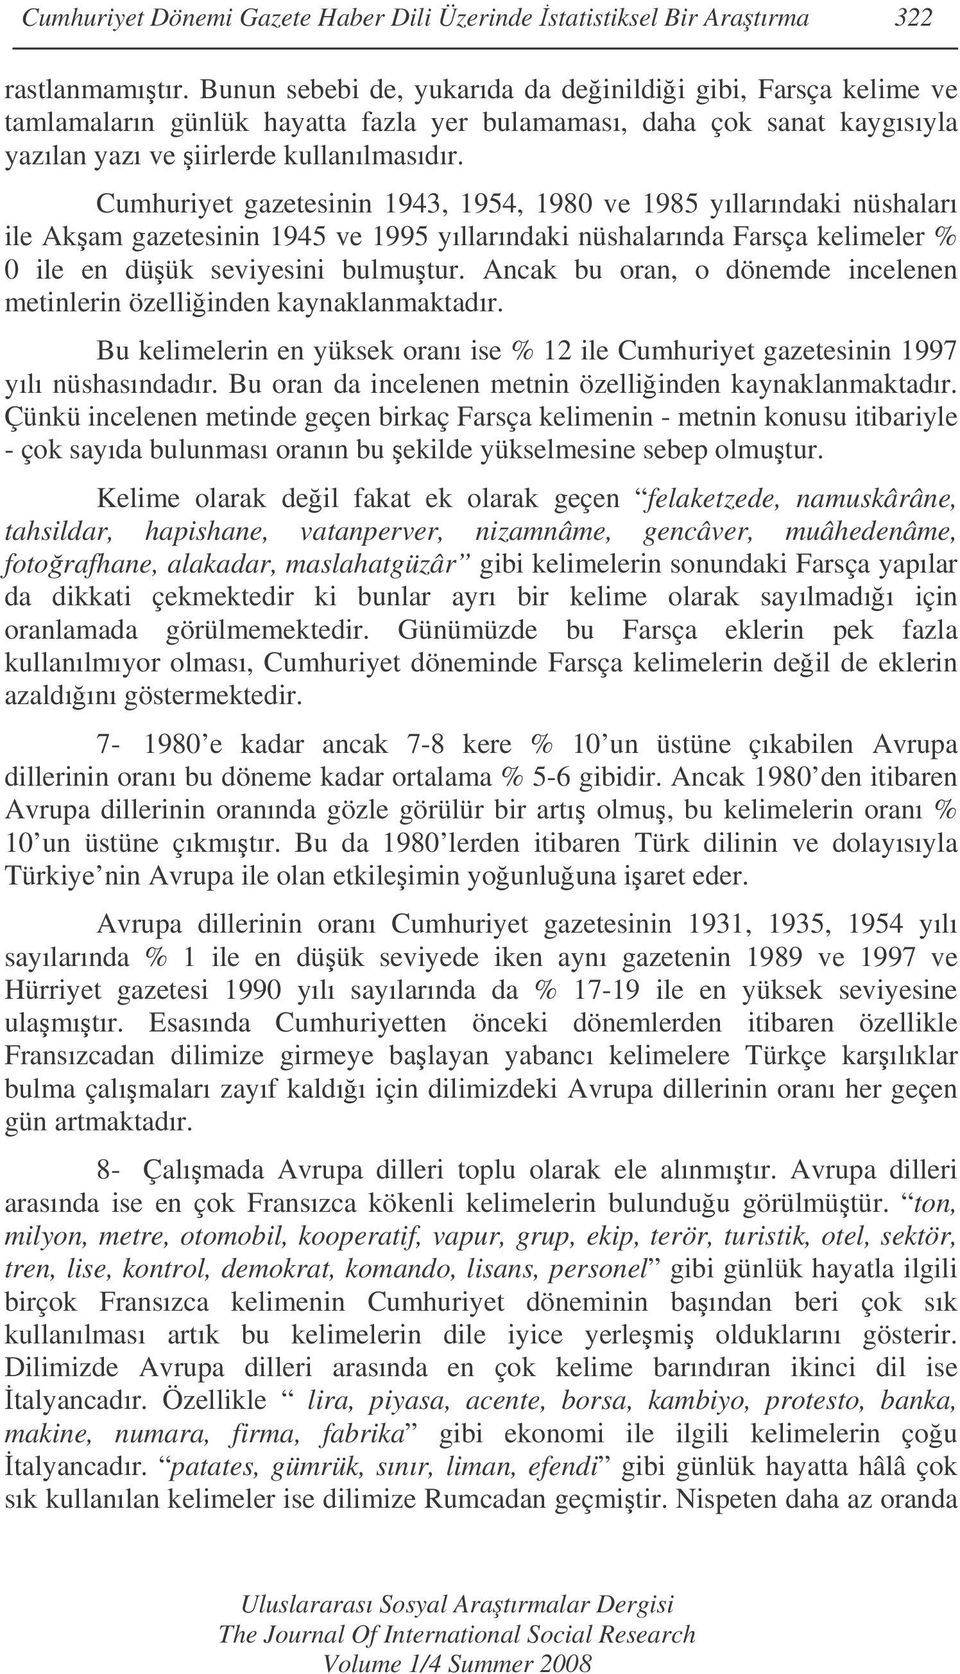 Cumhuriyet gazetesinin 1943, 1954, 1980 ve 1985 yıllarındaki nüshaları ile Akam gazetesinin 1945 ve 1995 yıllarındaki nüshalarında kelimeler 0 ile en düük seviyesini bulmutur.